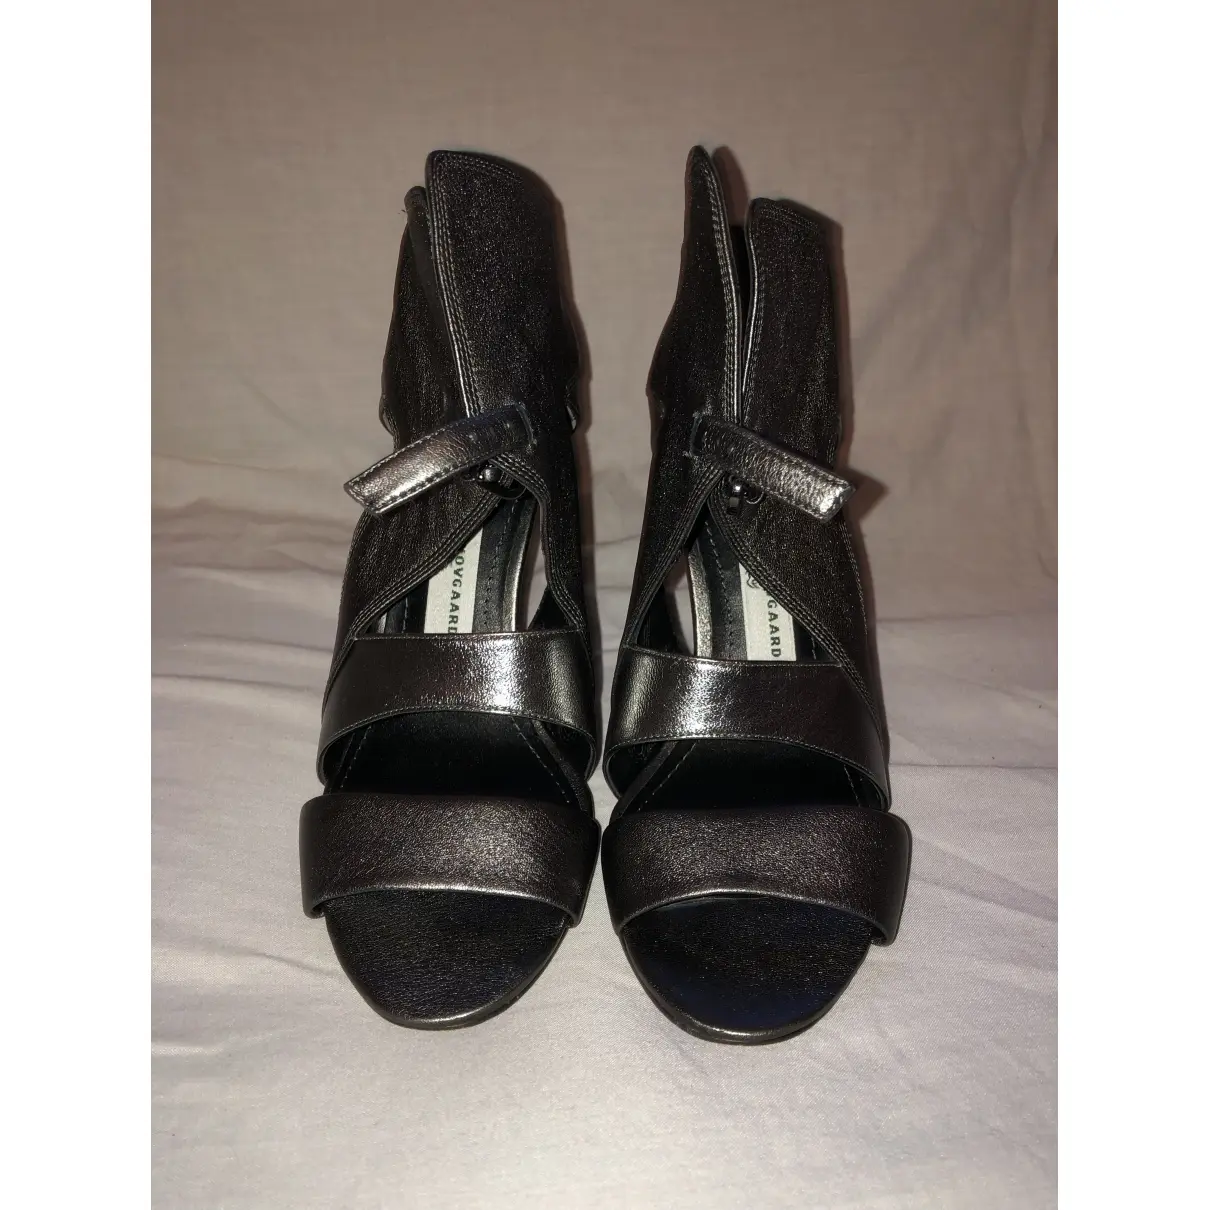 Buy Camilla Skovgaard Leather sandals online